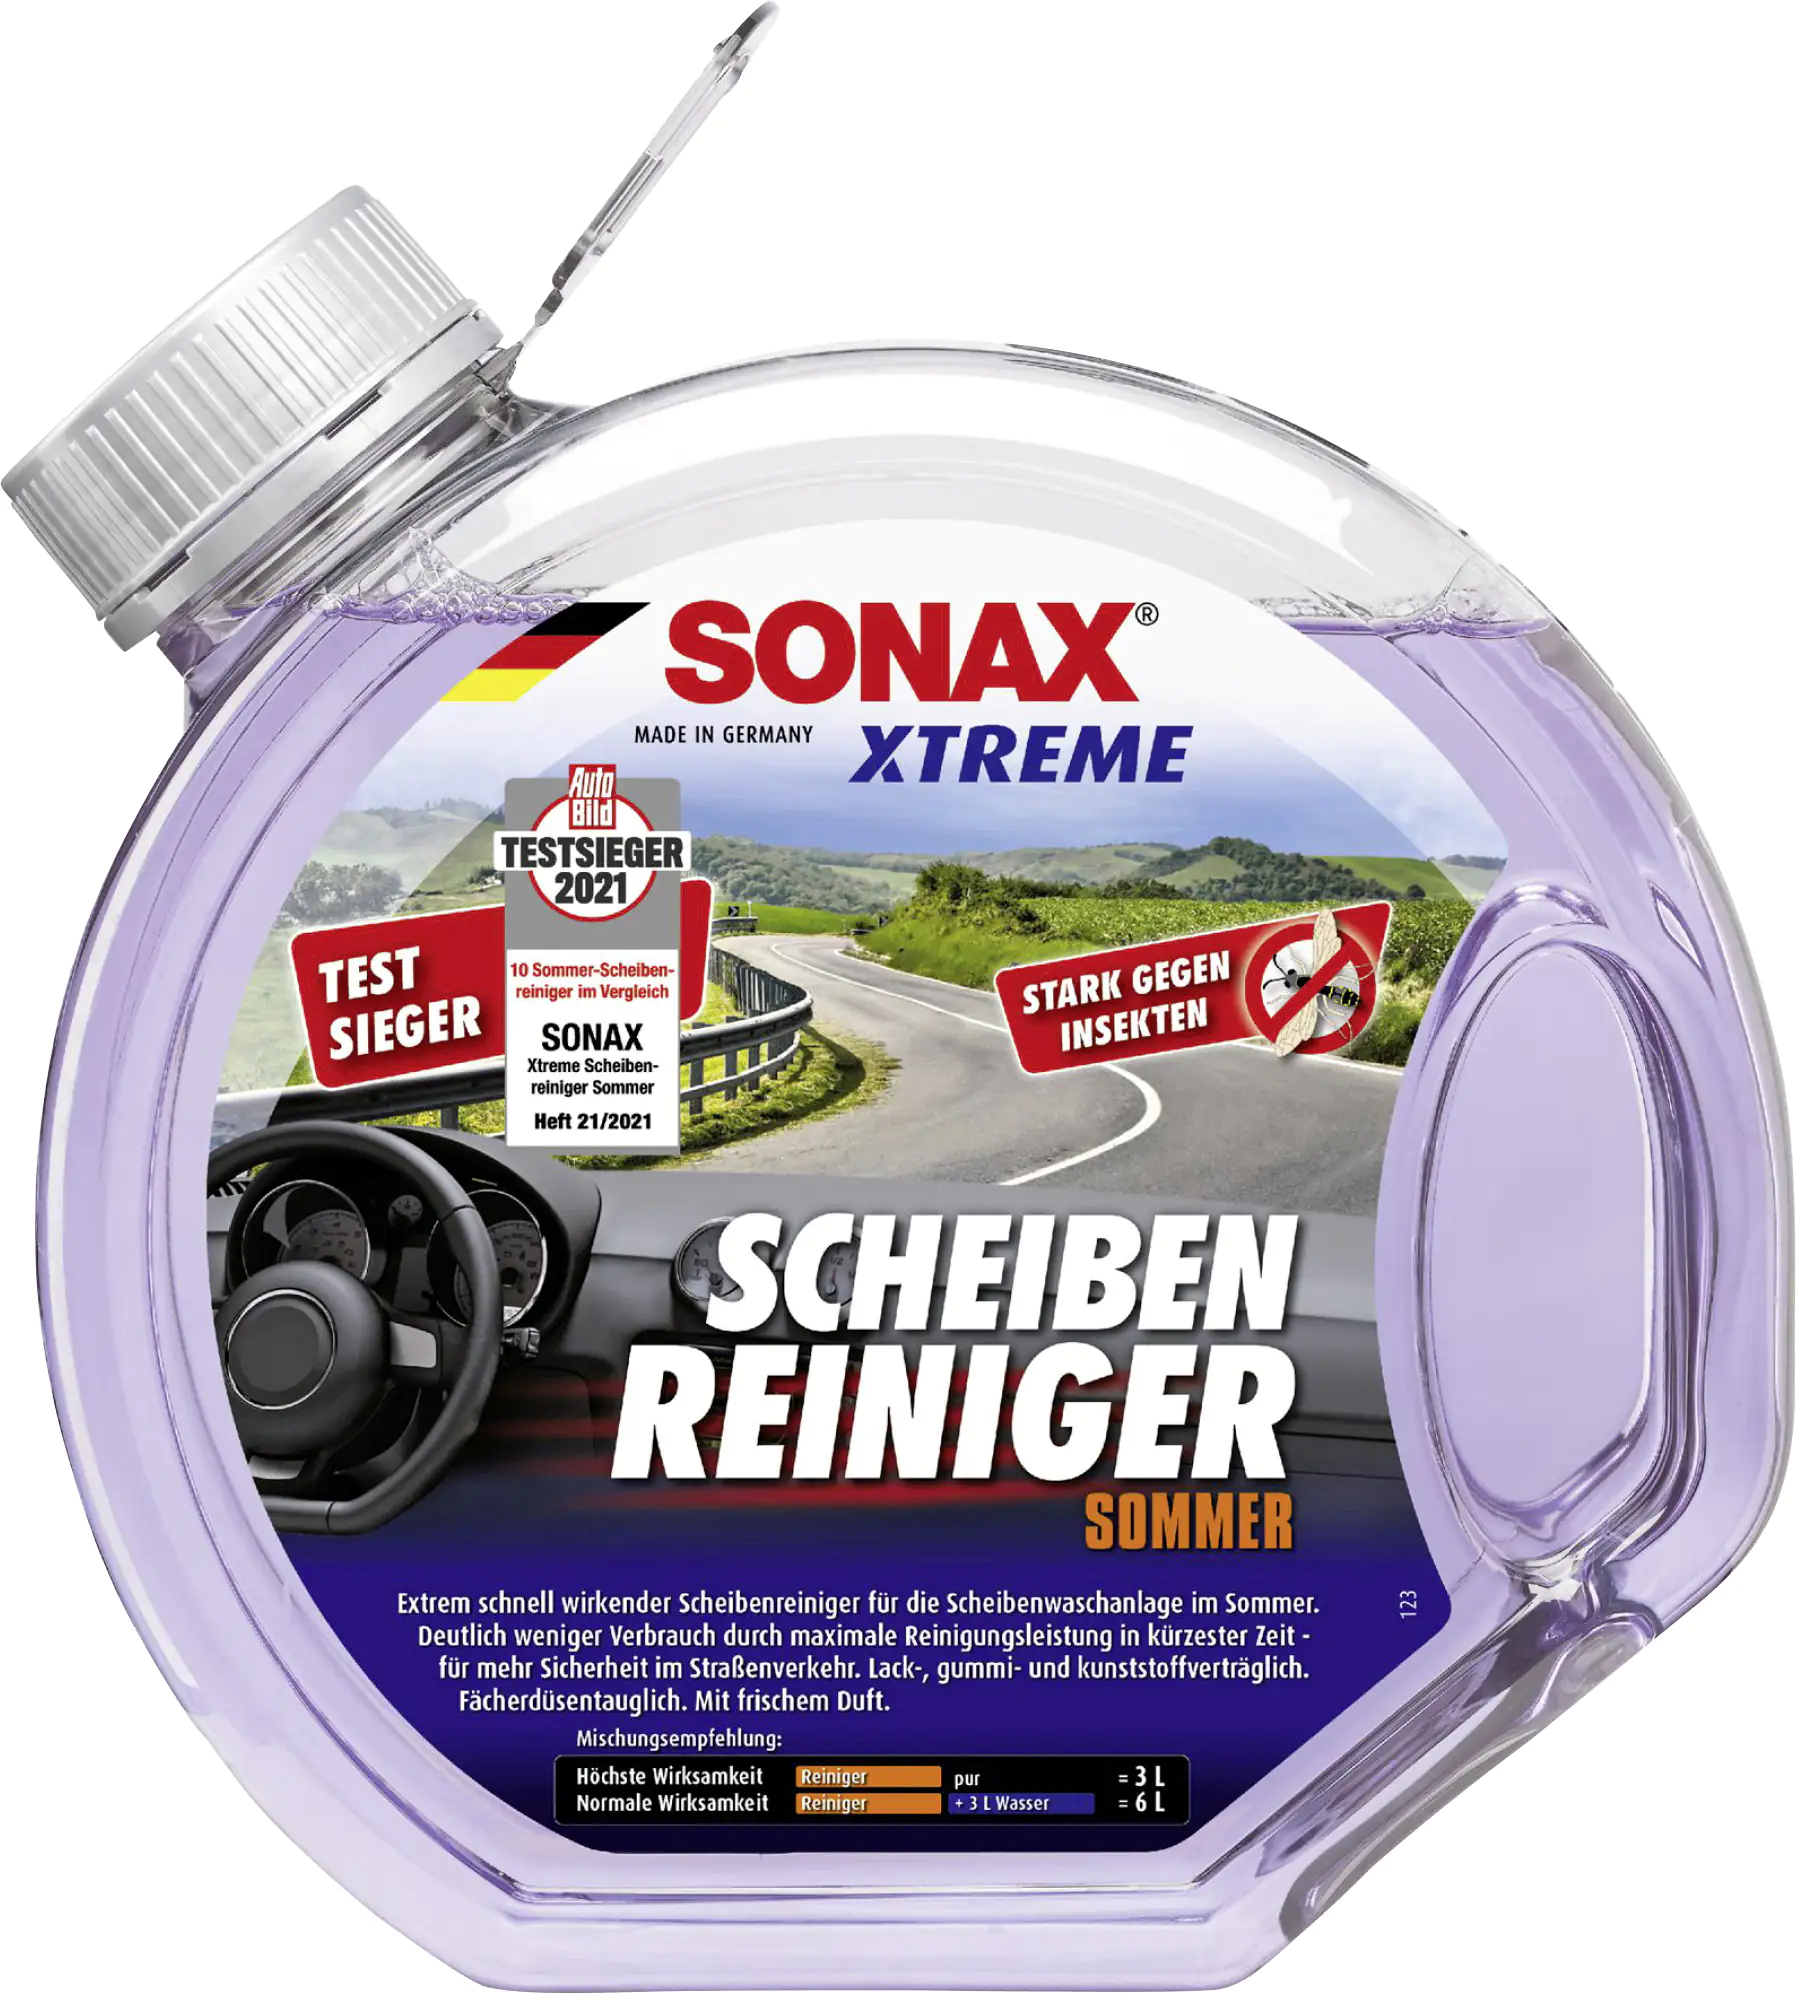 Sonax Xtreme Scheibenreiniger Sommer Konzentrat 1:3 3L kaufen